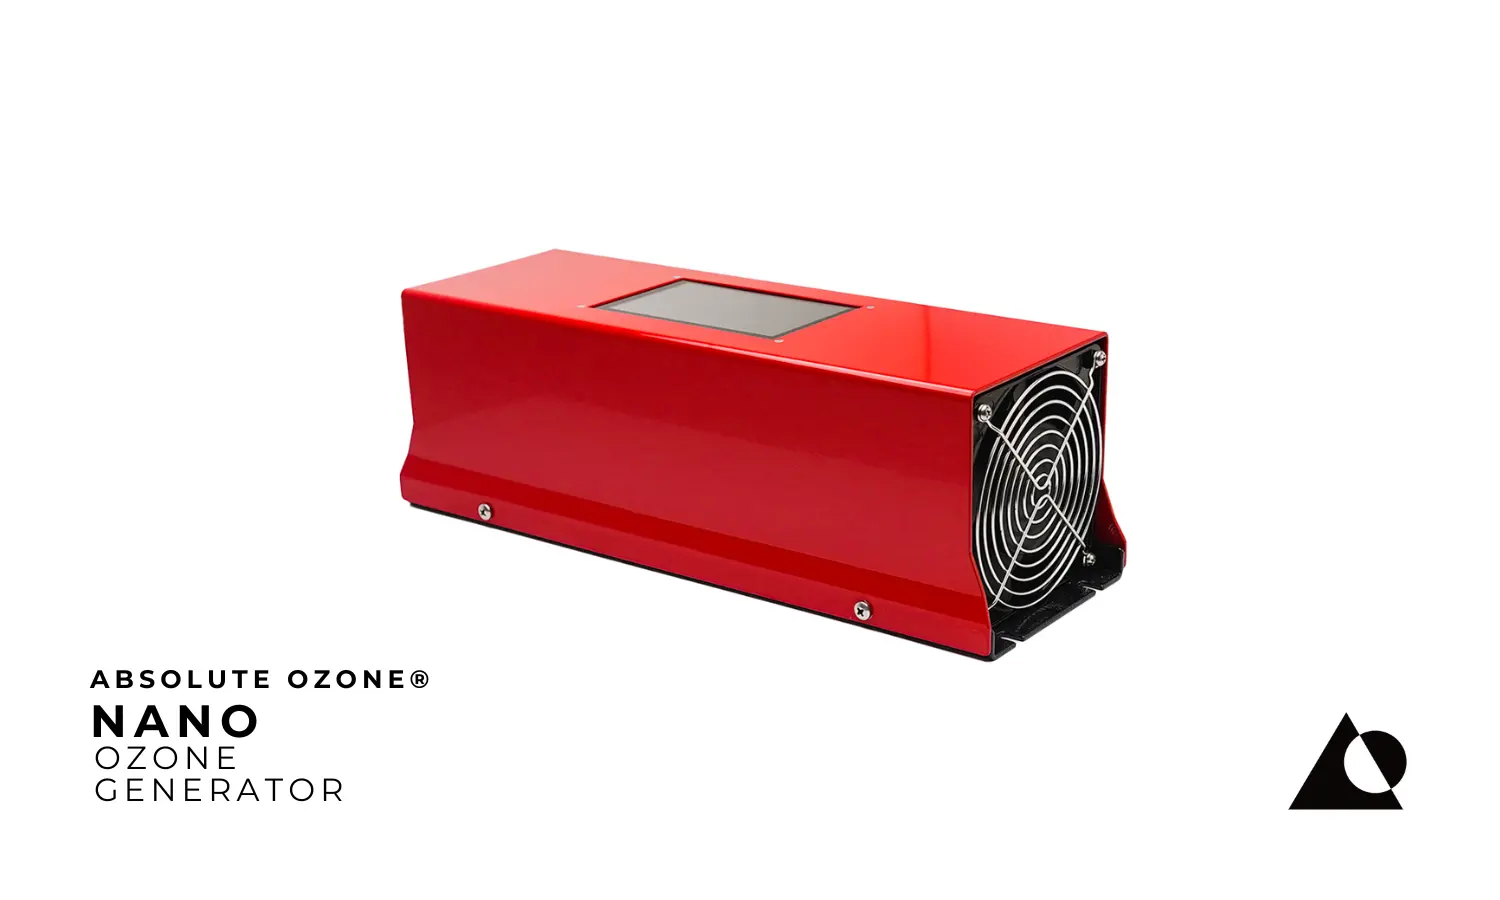 Absolute Ozone® NANO Industrial Generador de Ozono